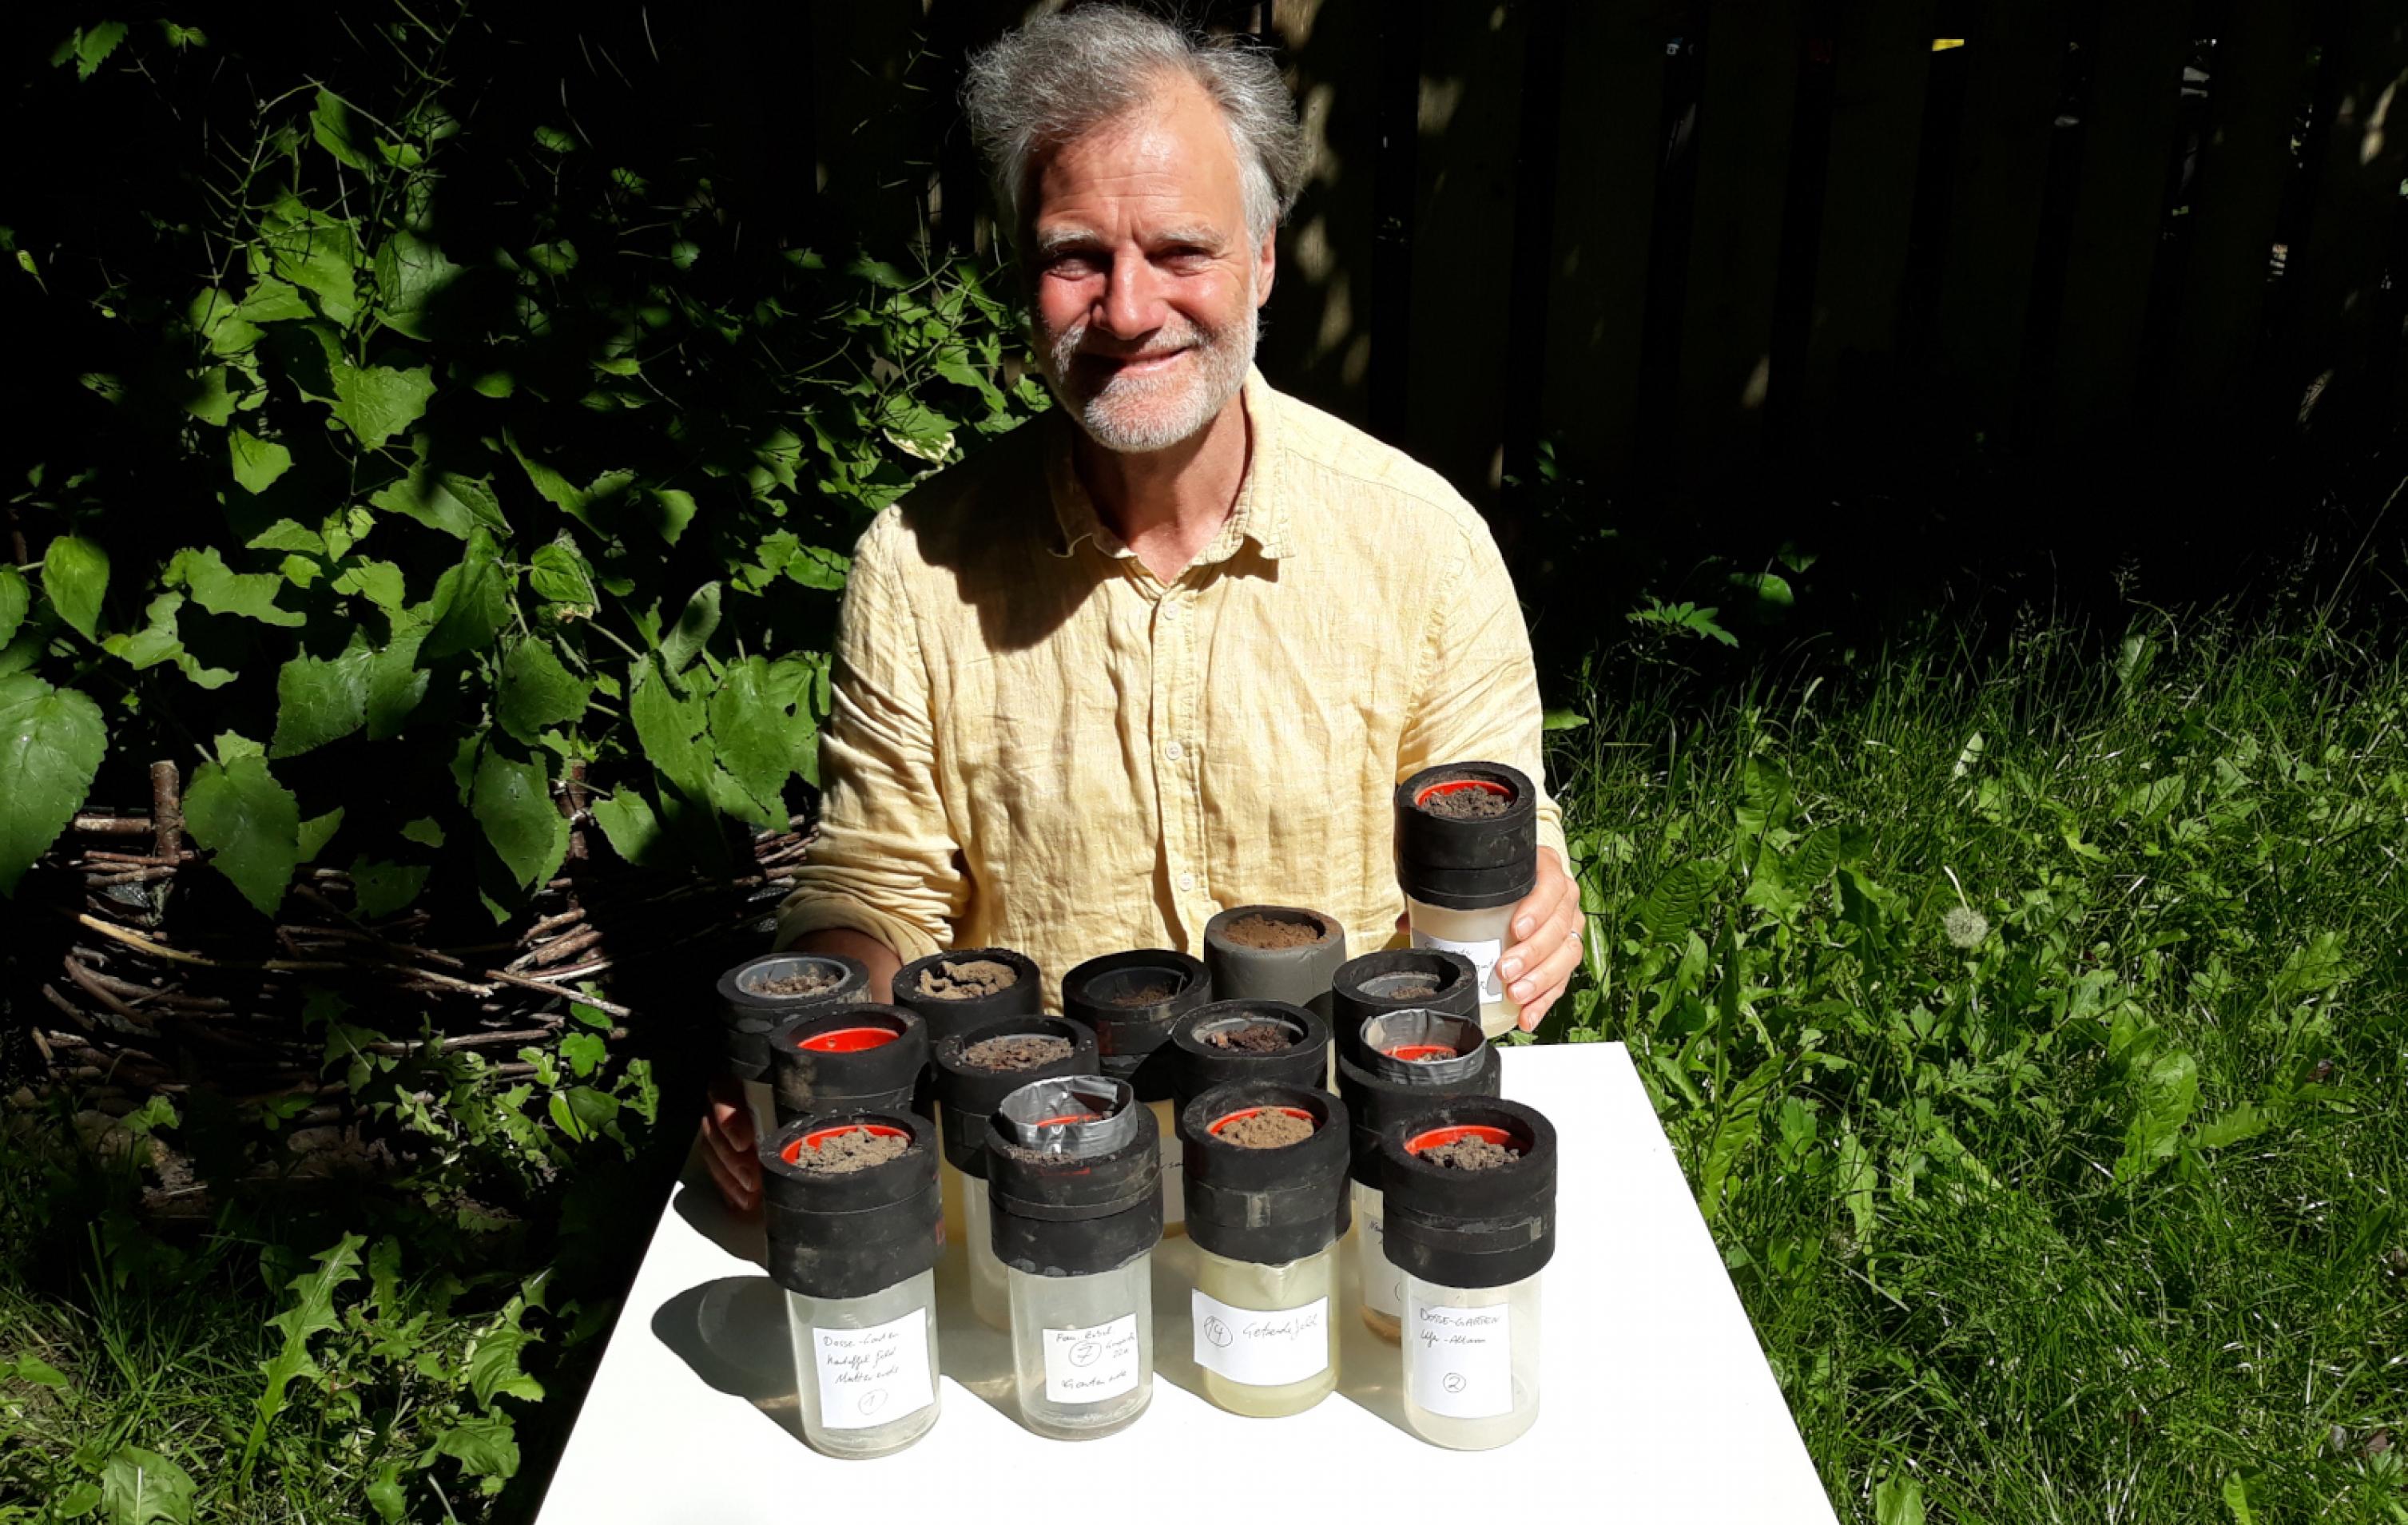 Ein Mann im Freien vor einem Klapptisch, darauf 14 Probenbehälter mit Bodenproben in verschiedensten Brauntönen